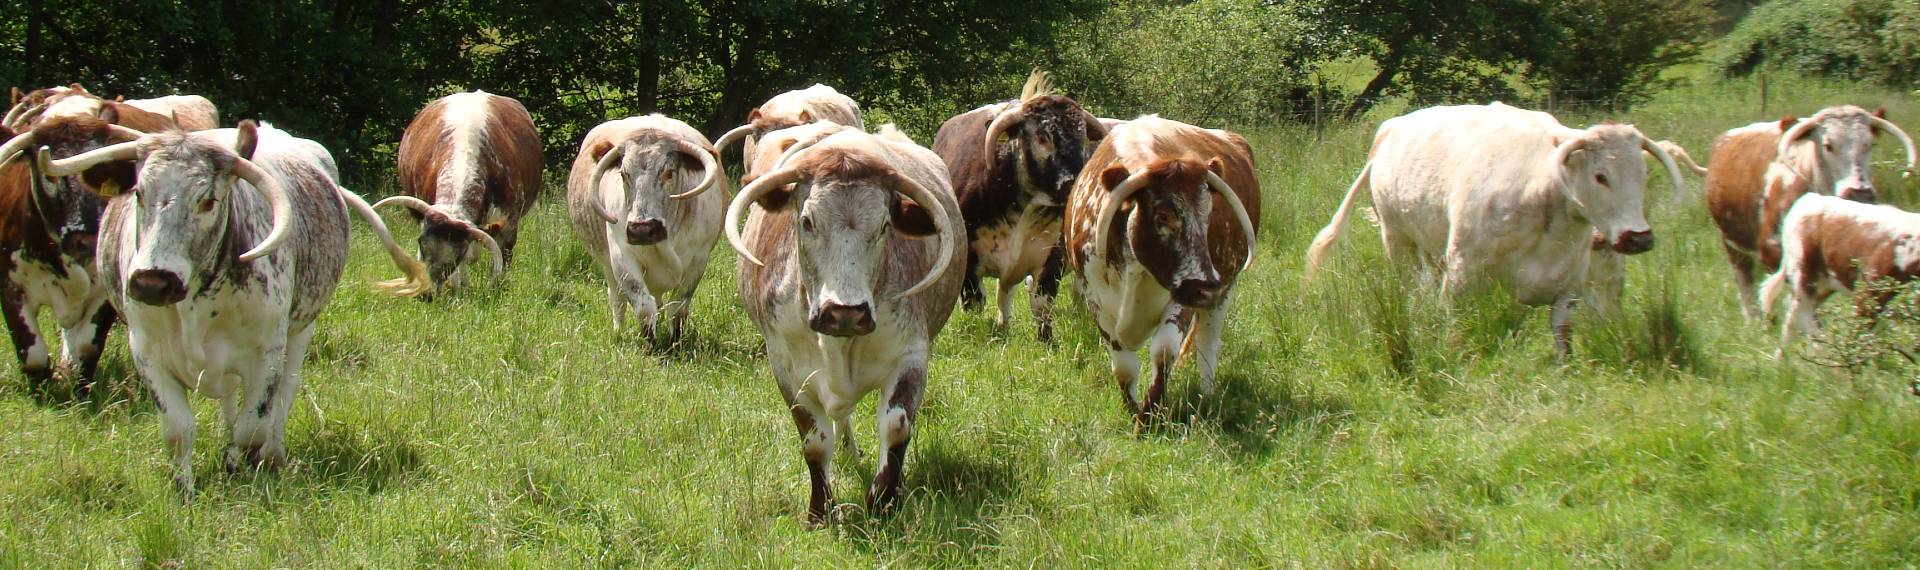 A herd of Longhorn cattle in a landscape